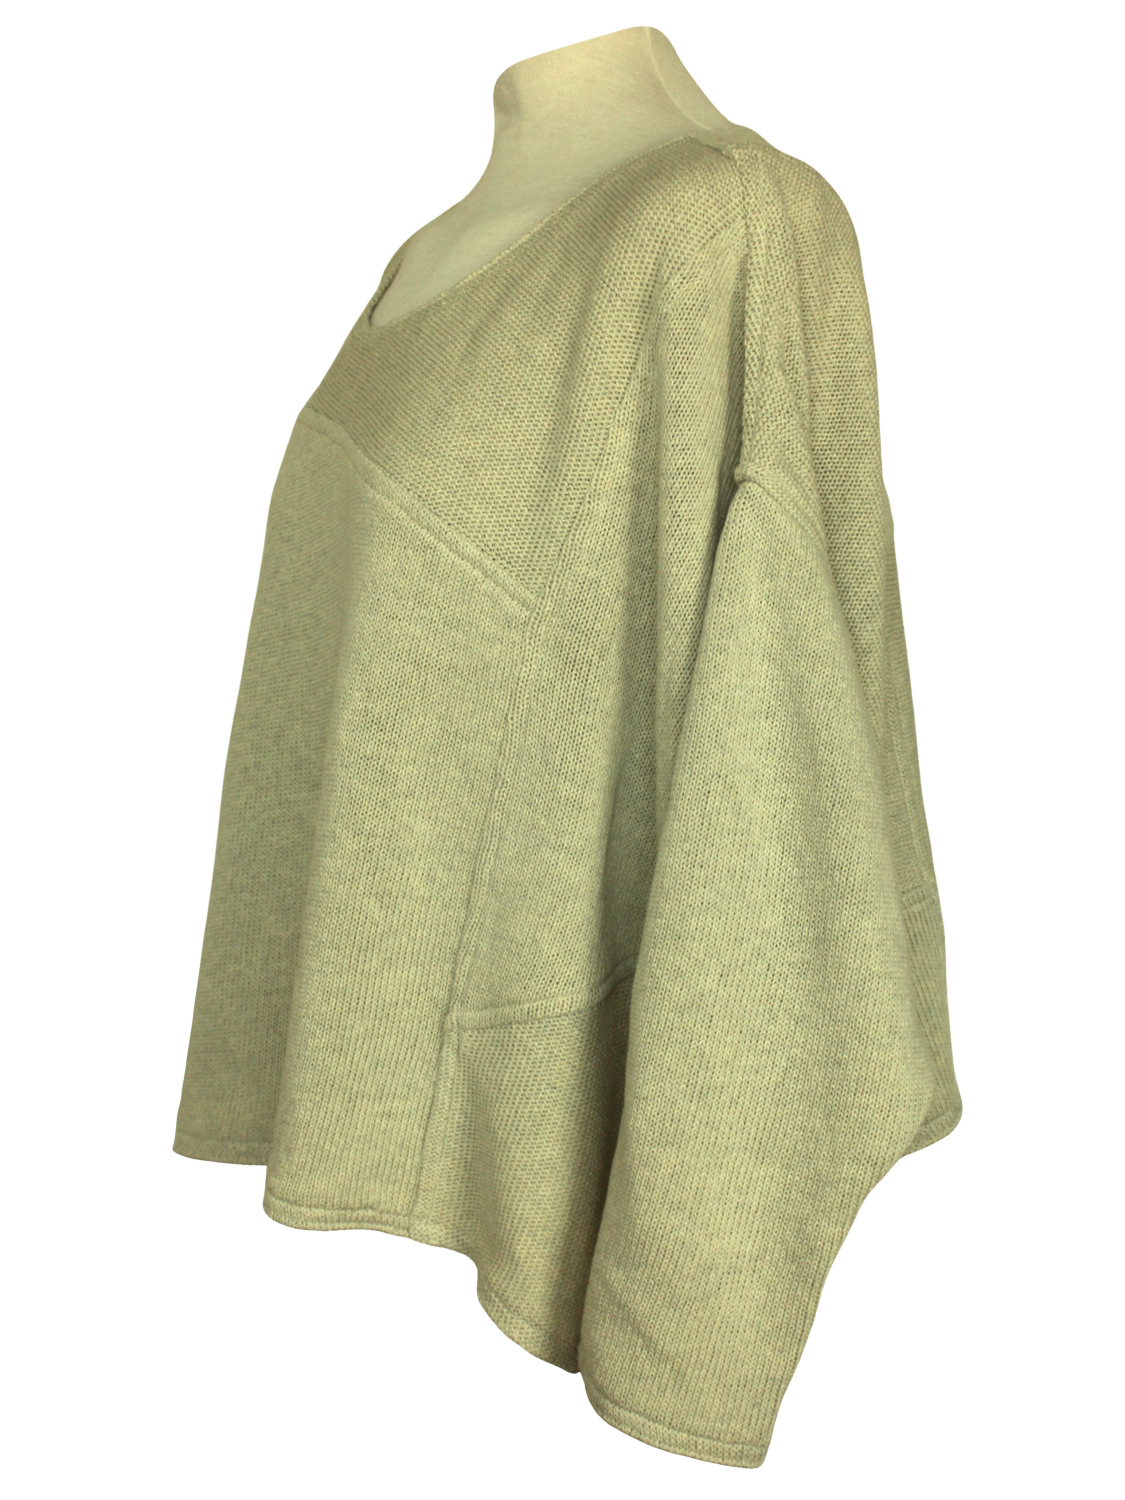 Damestrui in de kleur beige-groen. De asymmetrische vlakken en katoenen breisel geven deze trui een tijdloze maar toch trendy look.